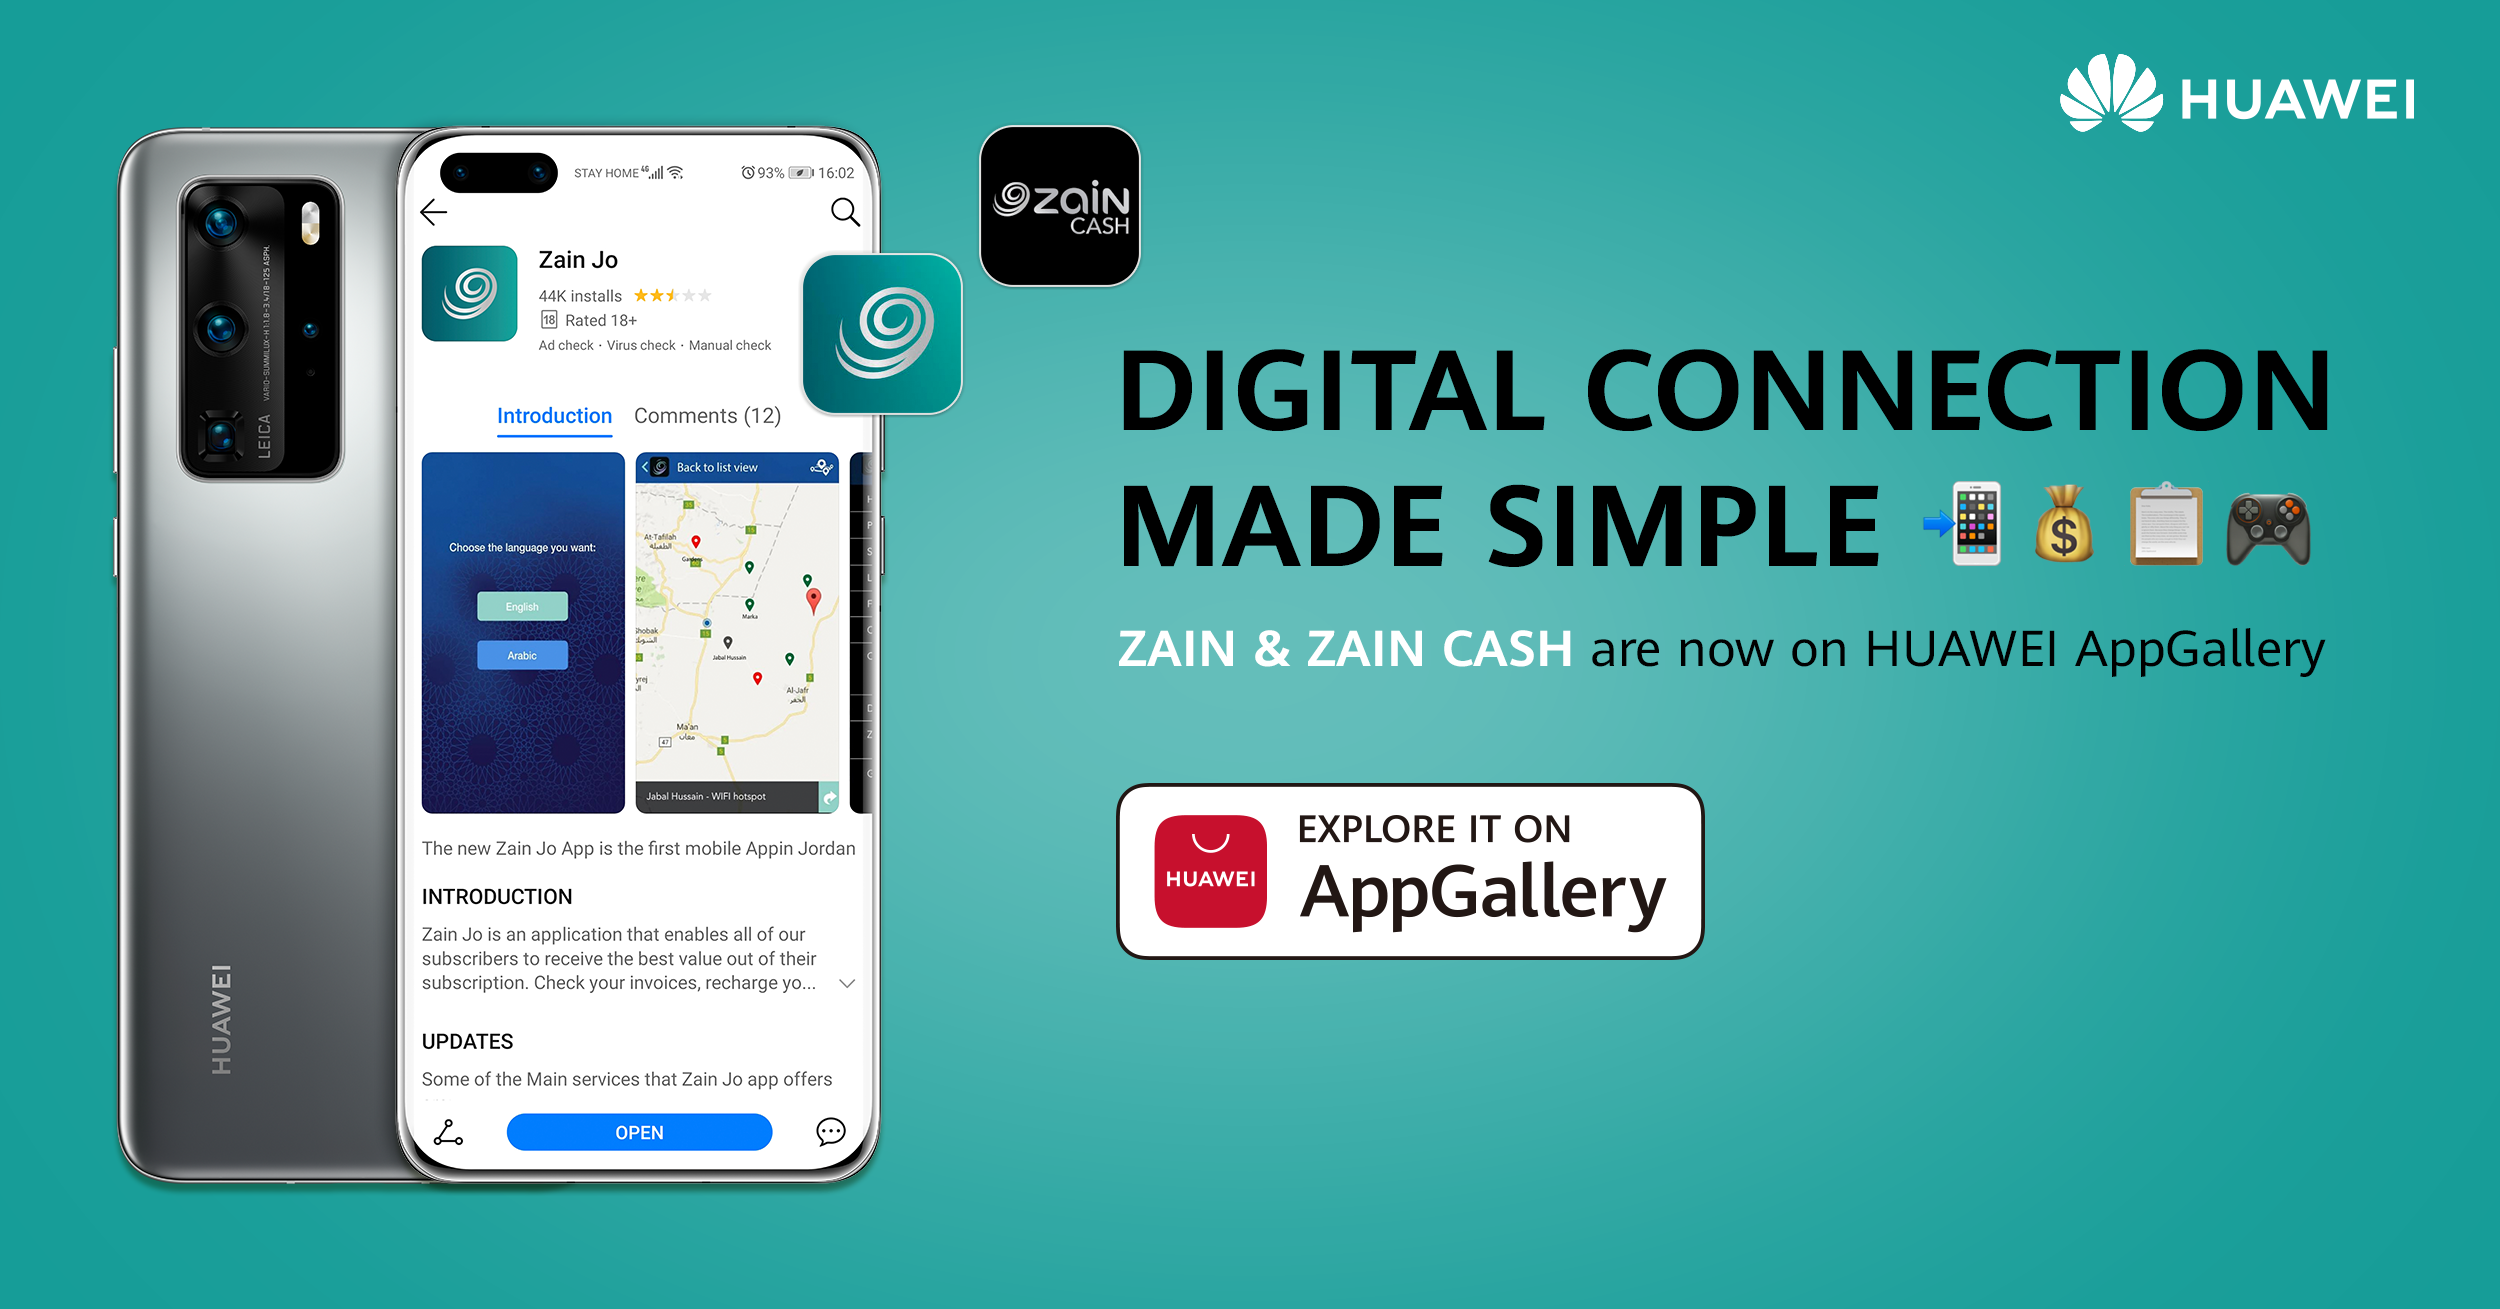 تجربة متميزة مع تطبيقي “Zain Jo” و”Zain Cash” عبر منصة Huawei AppGallery –  جريدة الغد